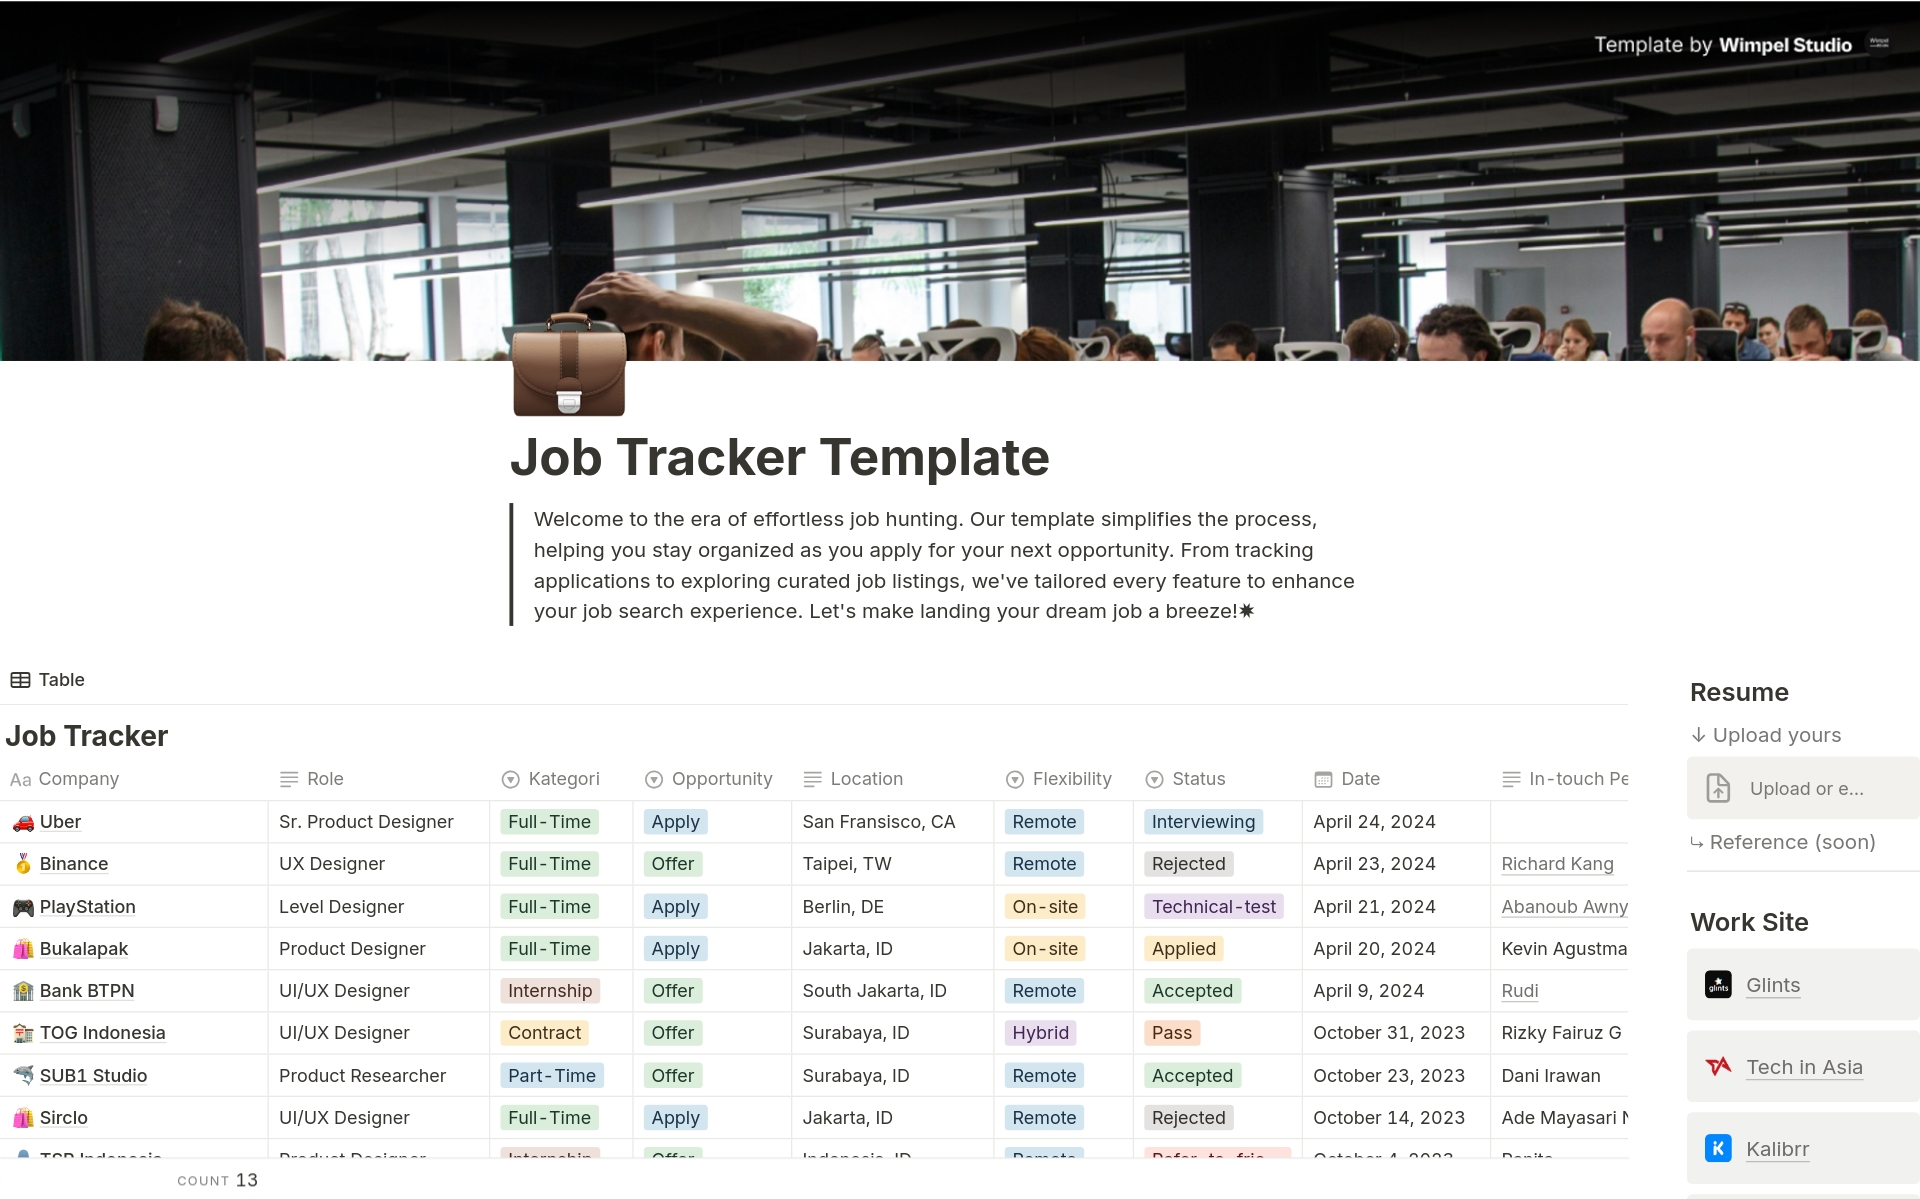 Vista previa de una plantilla para Job Application Tracker